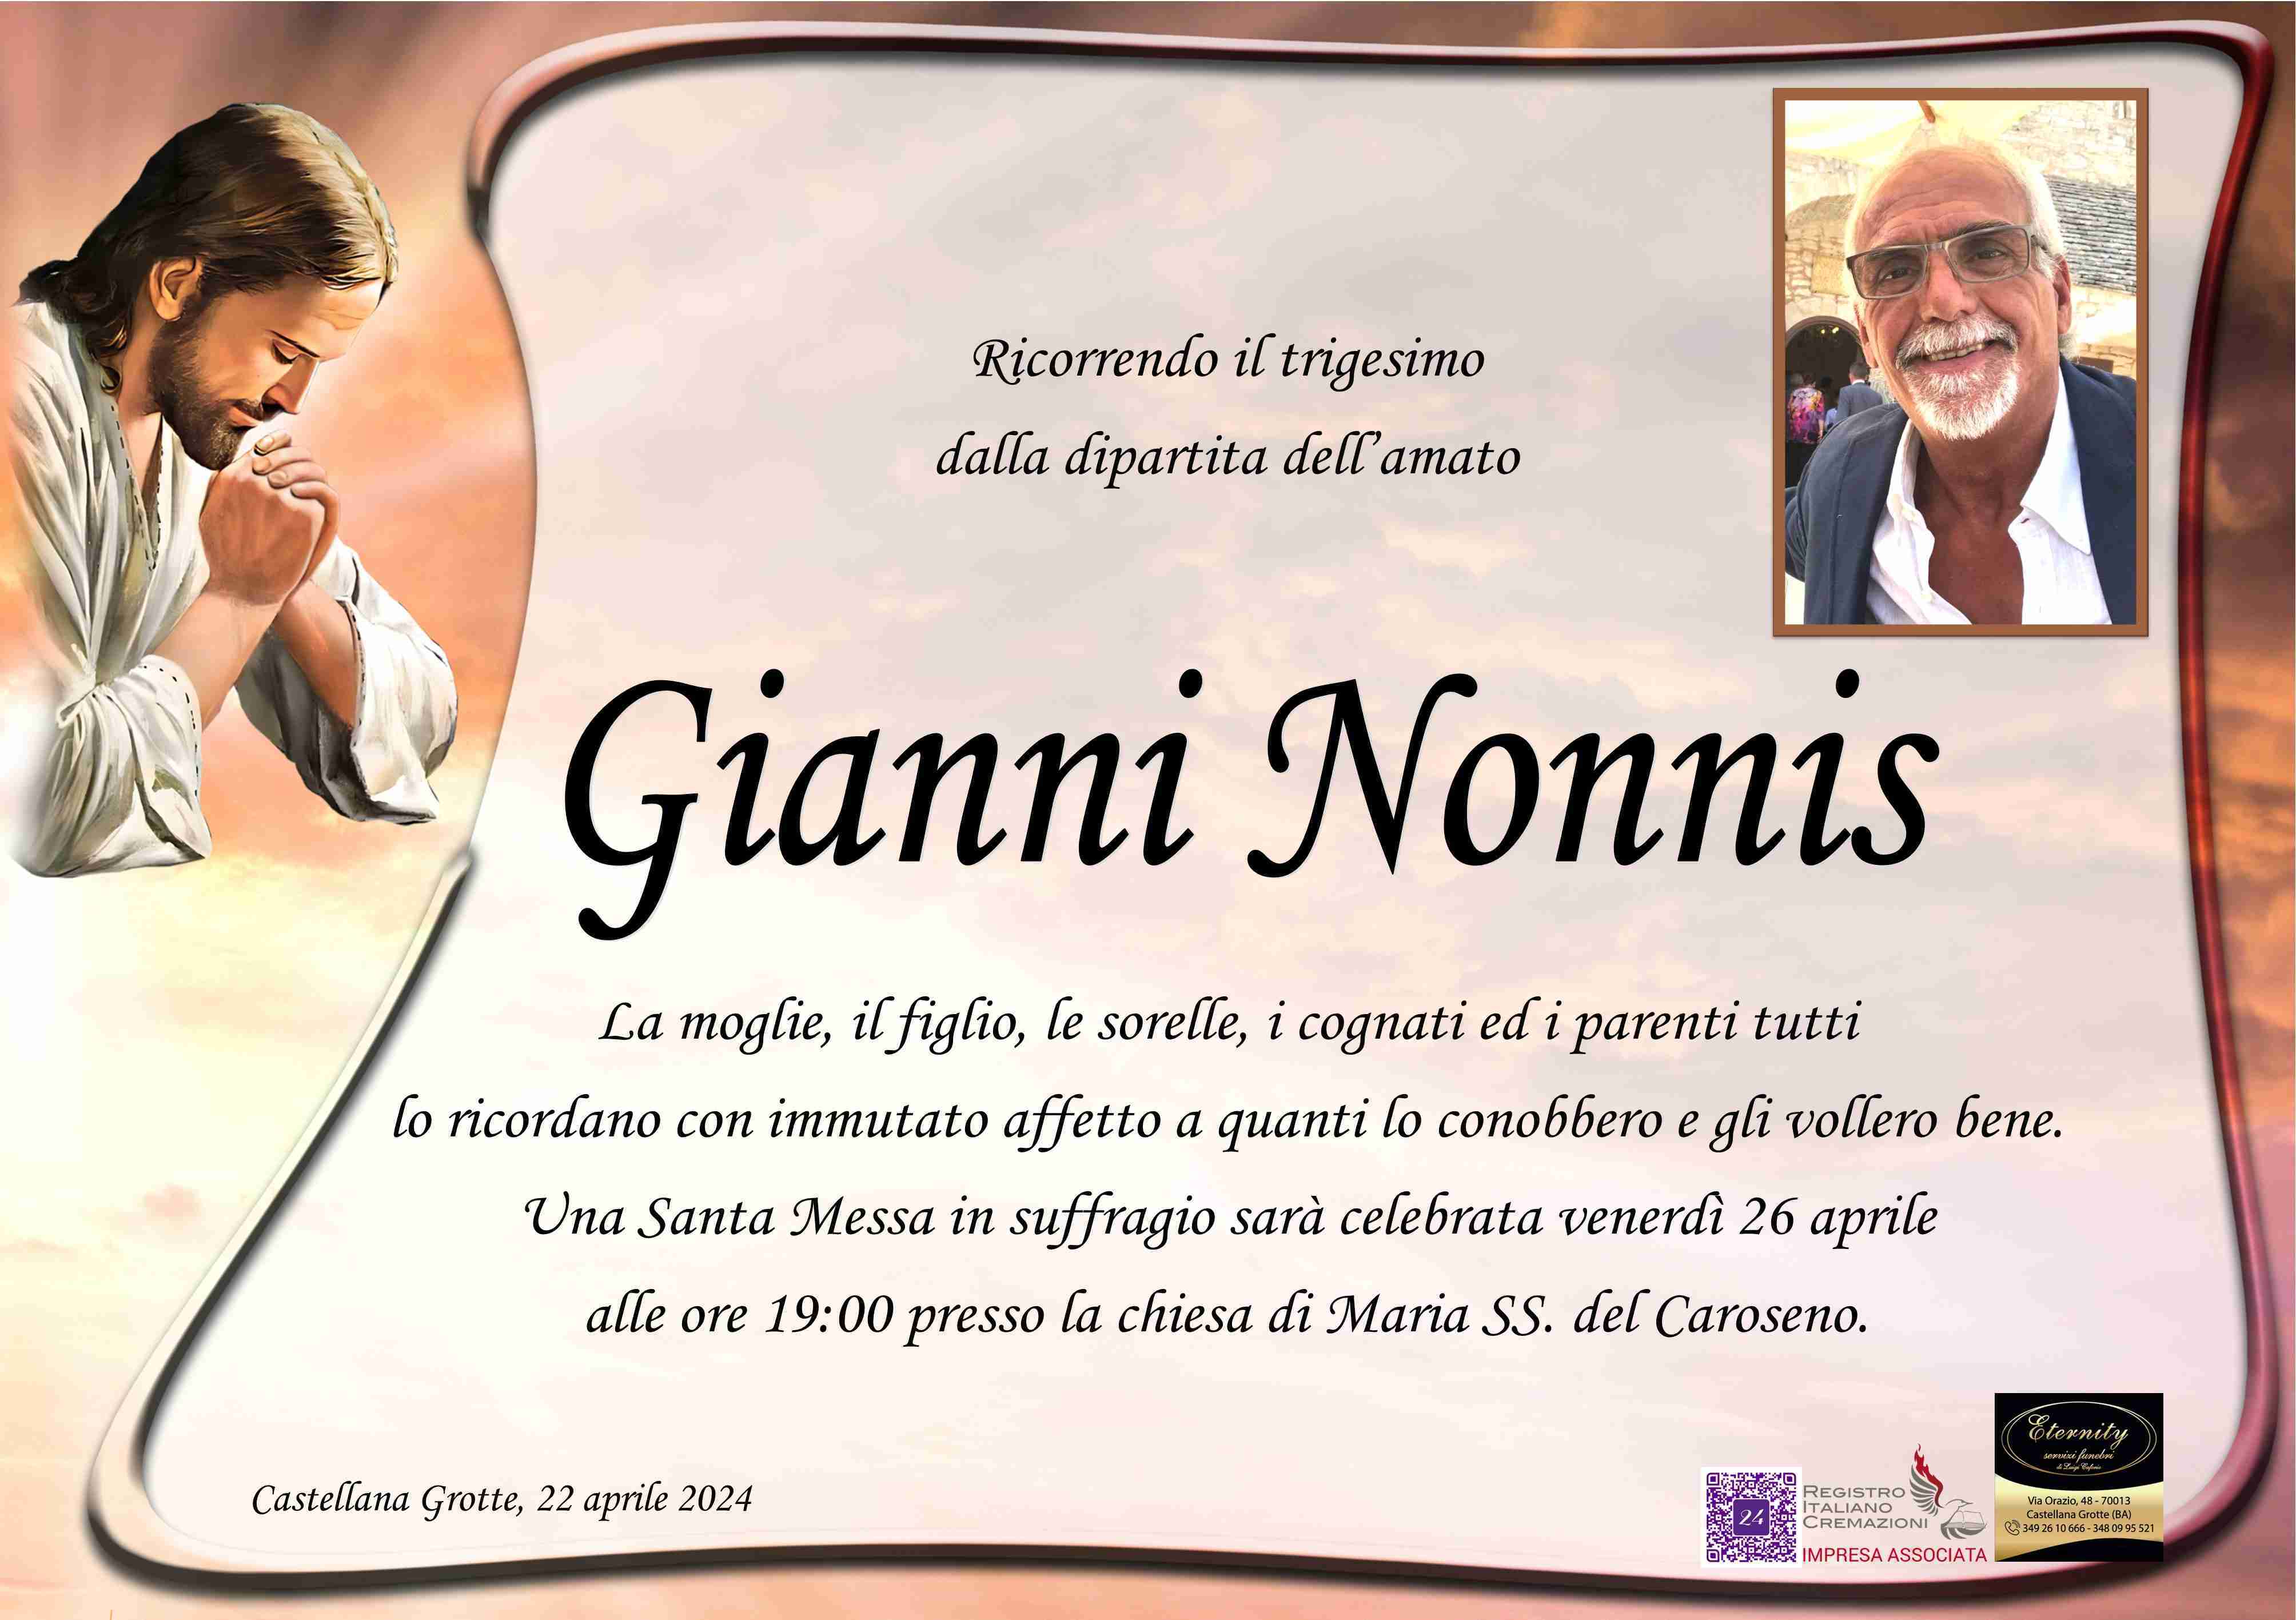 Giovannino Nonnis